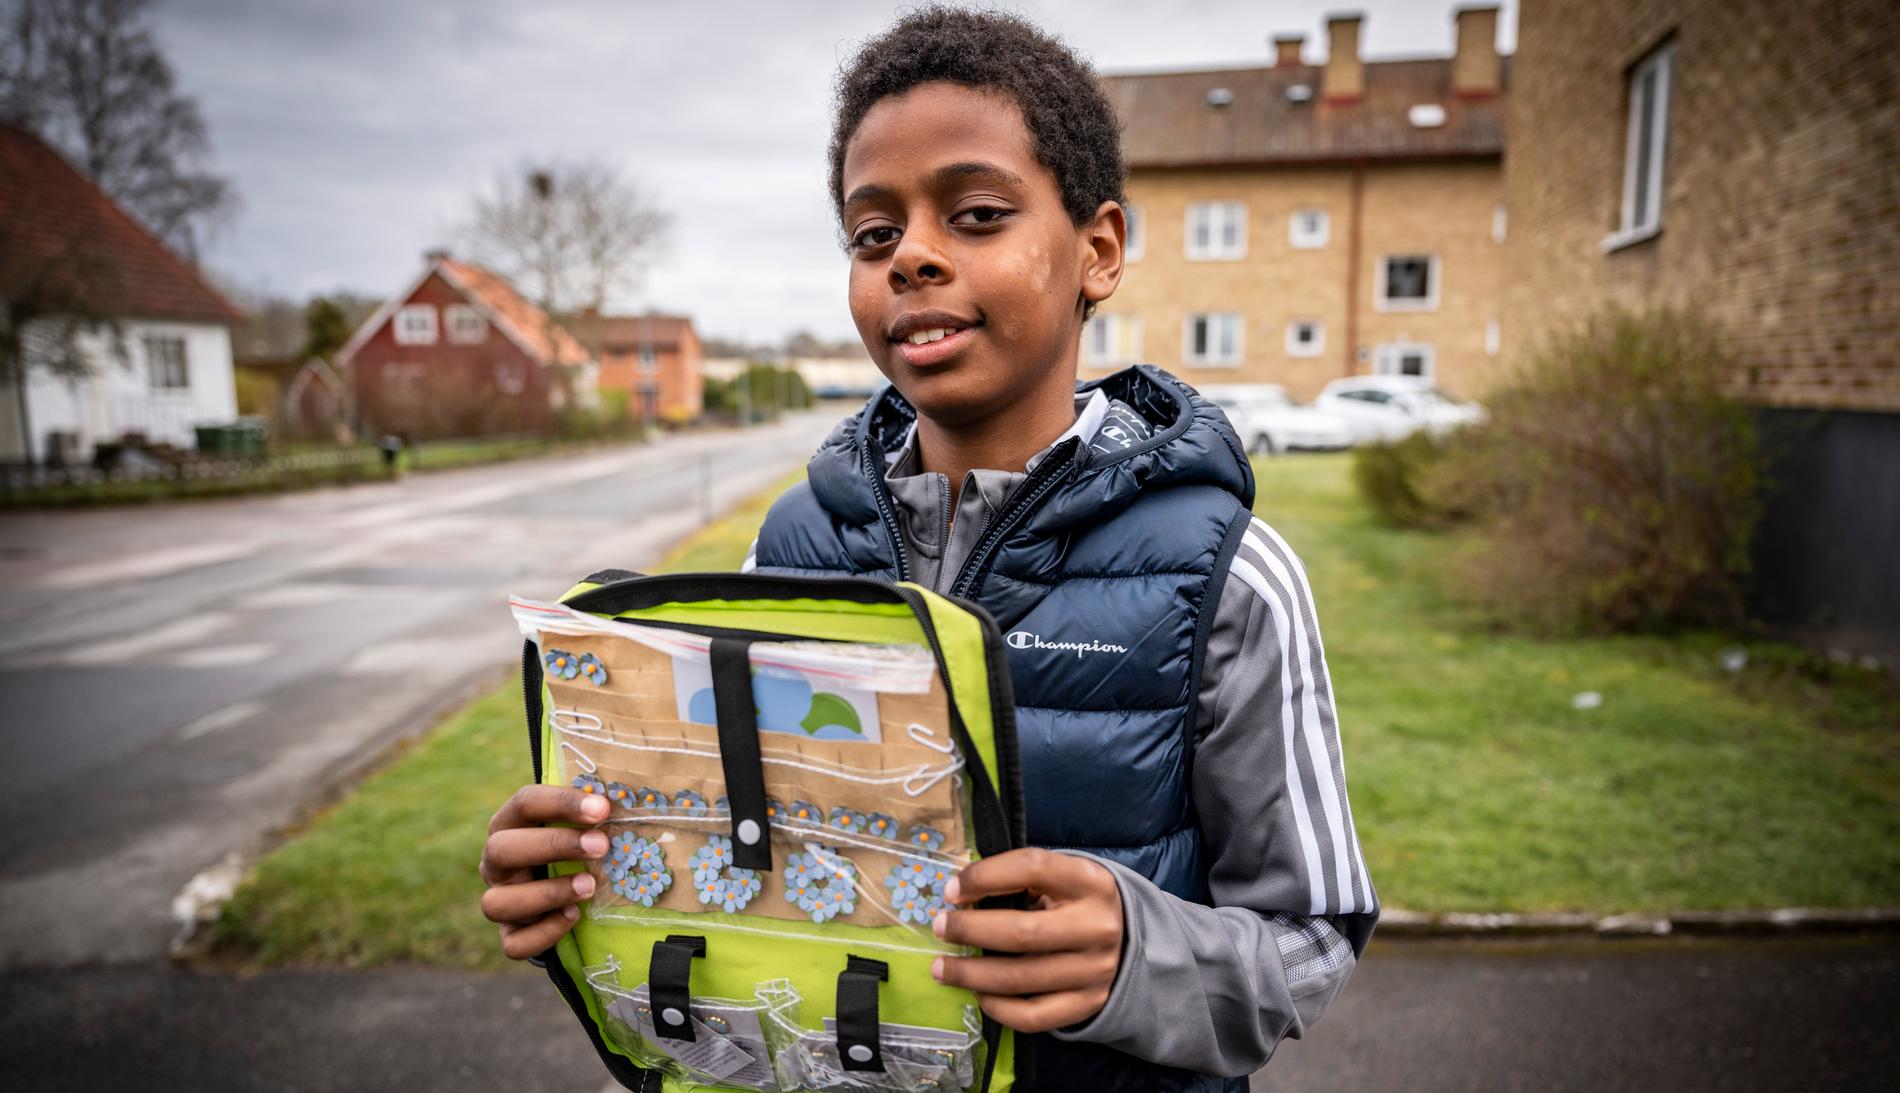 Murhaf, 12, har sålt majblommor för miljoner. Han är född i Sverige men lever i limbo då han fortfarande inte vet om han får stanna. 